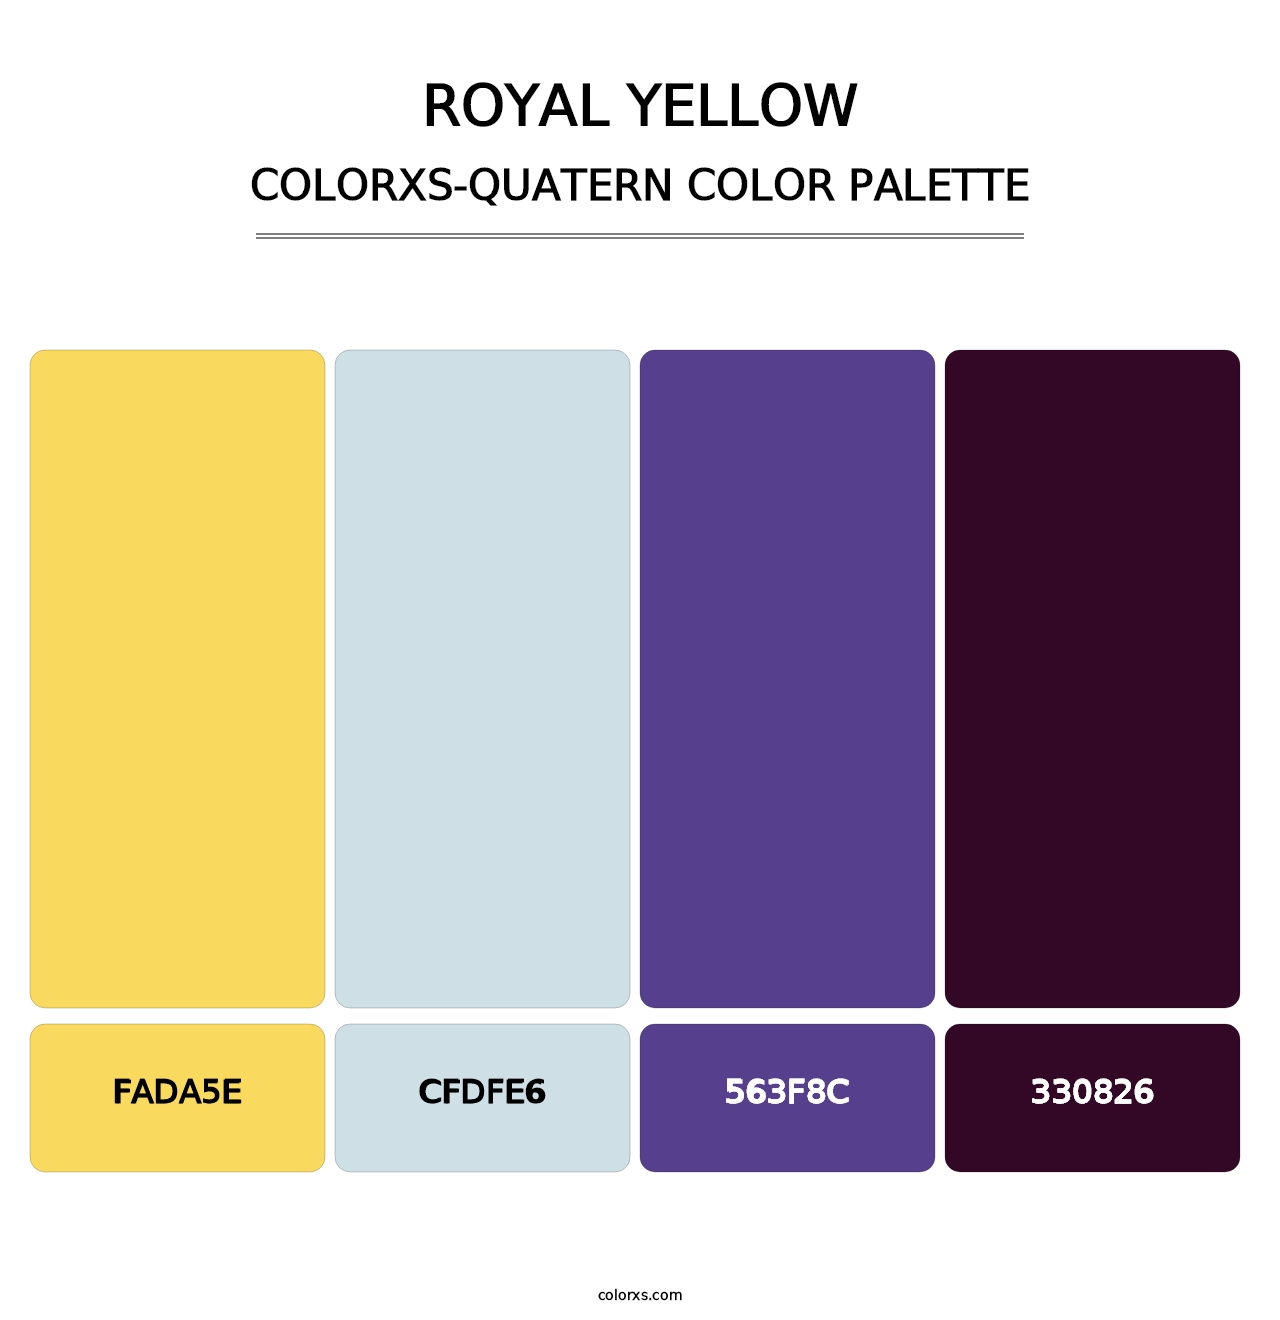 Royal Yellow - Colorxs Quatern Palette